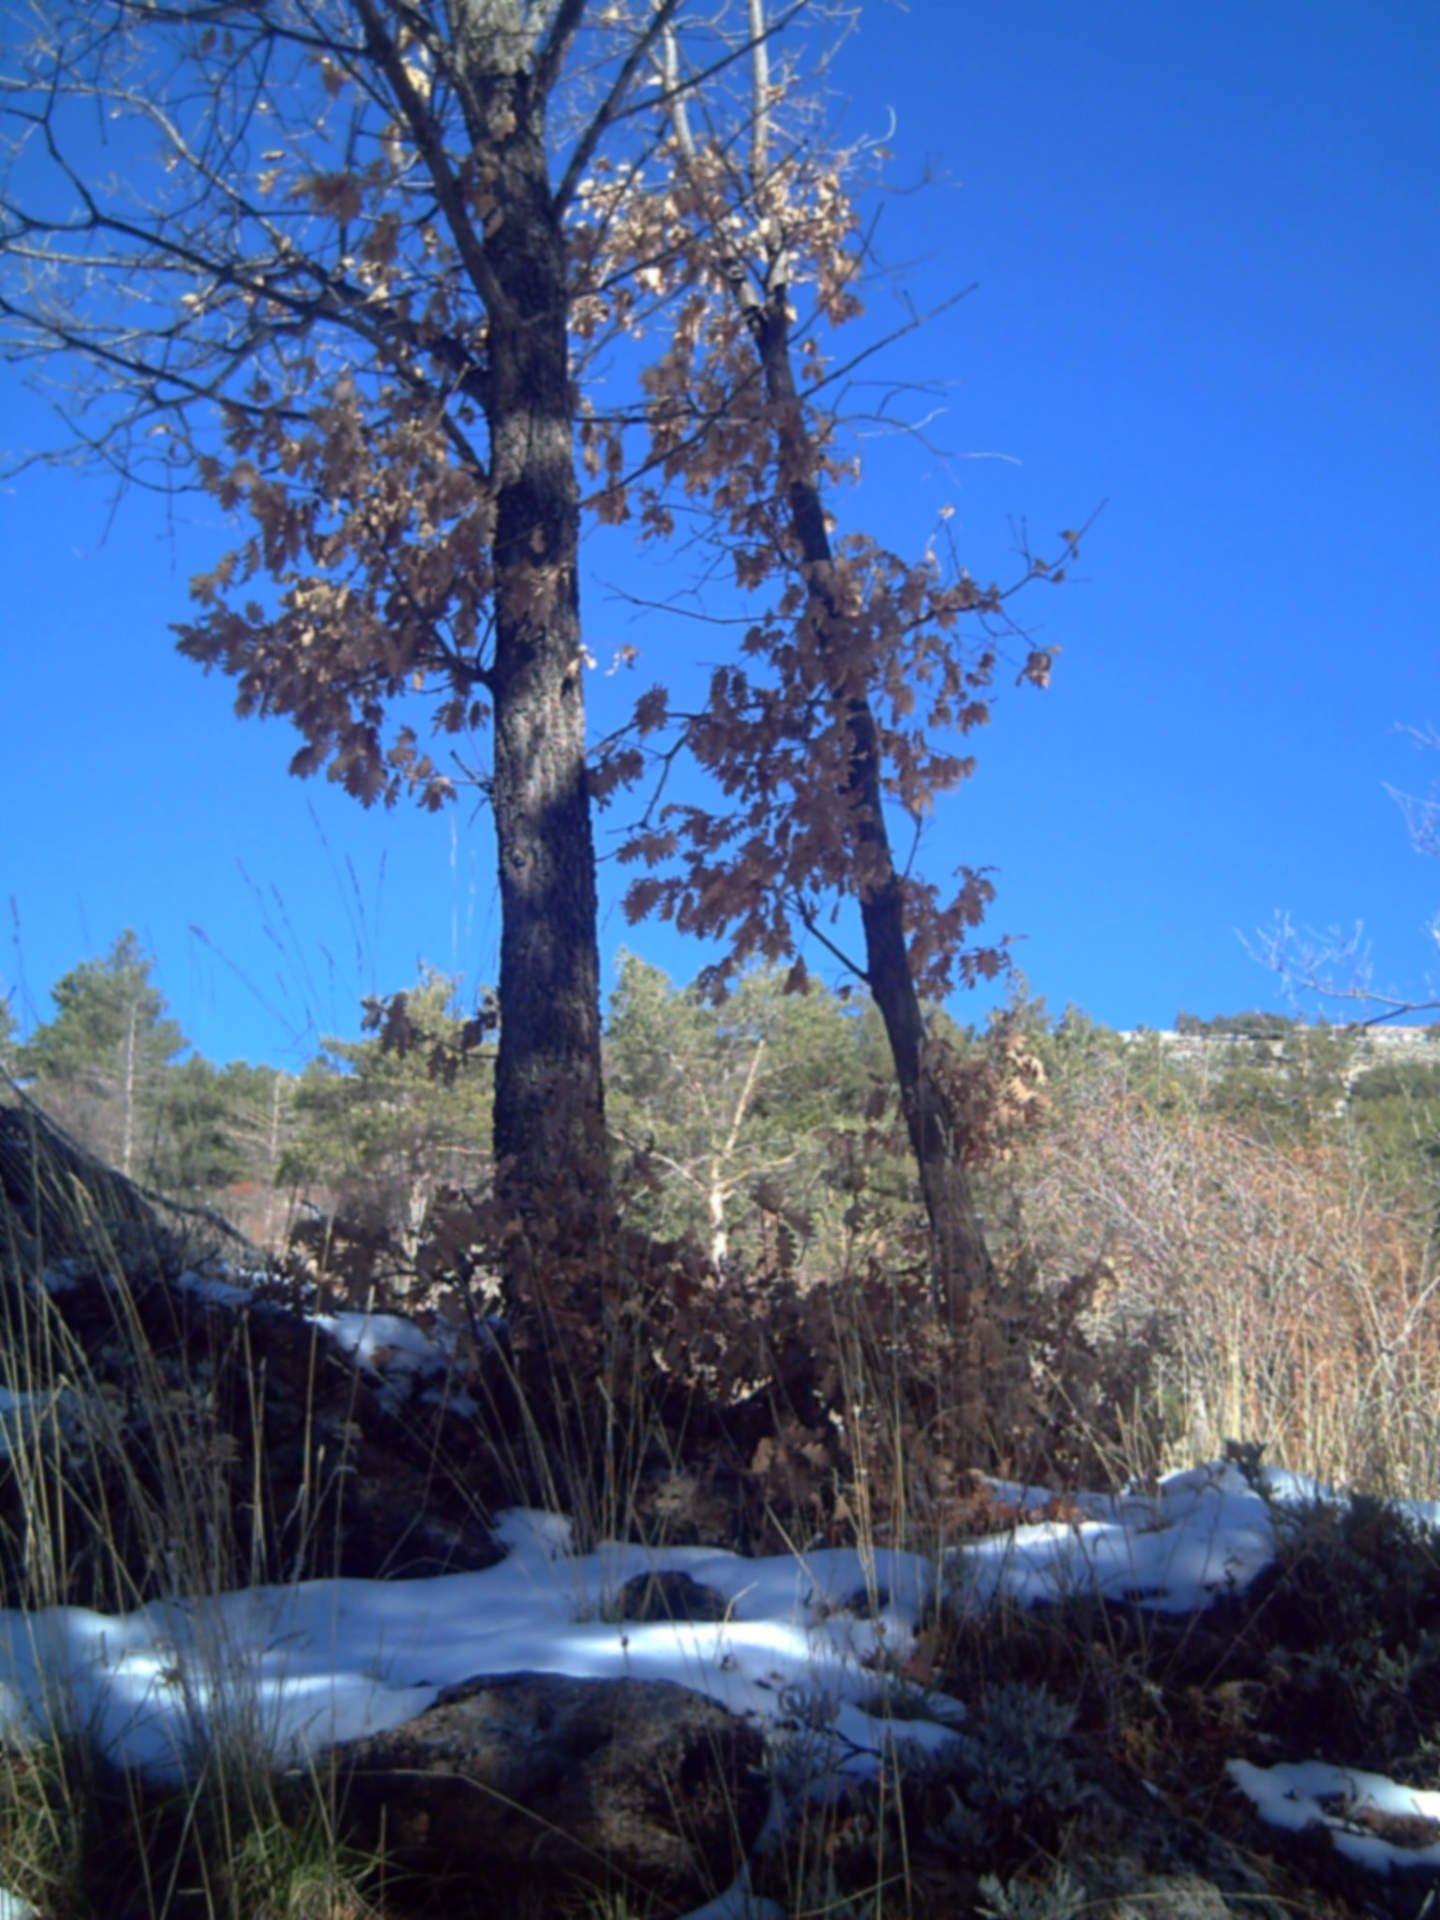 La naturaleza en Pedraza de la Sierra. Fuente |Flickr.